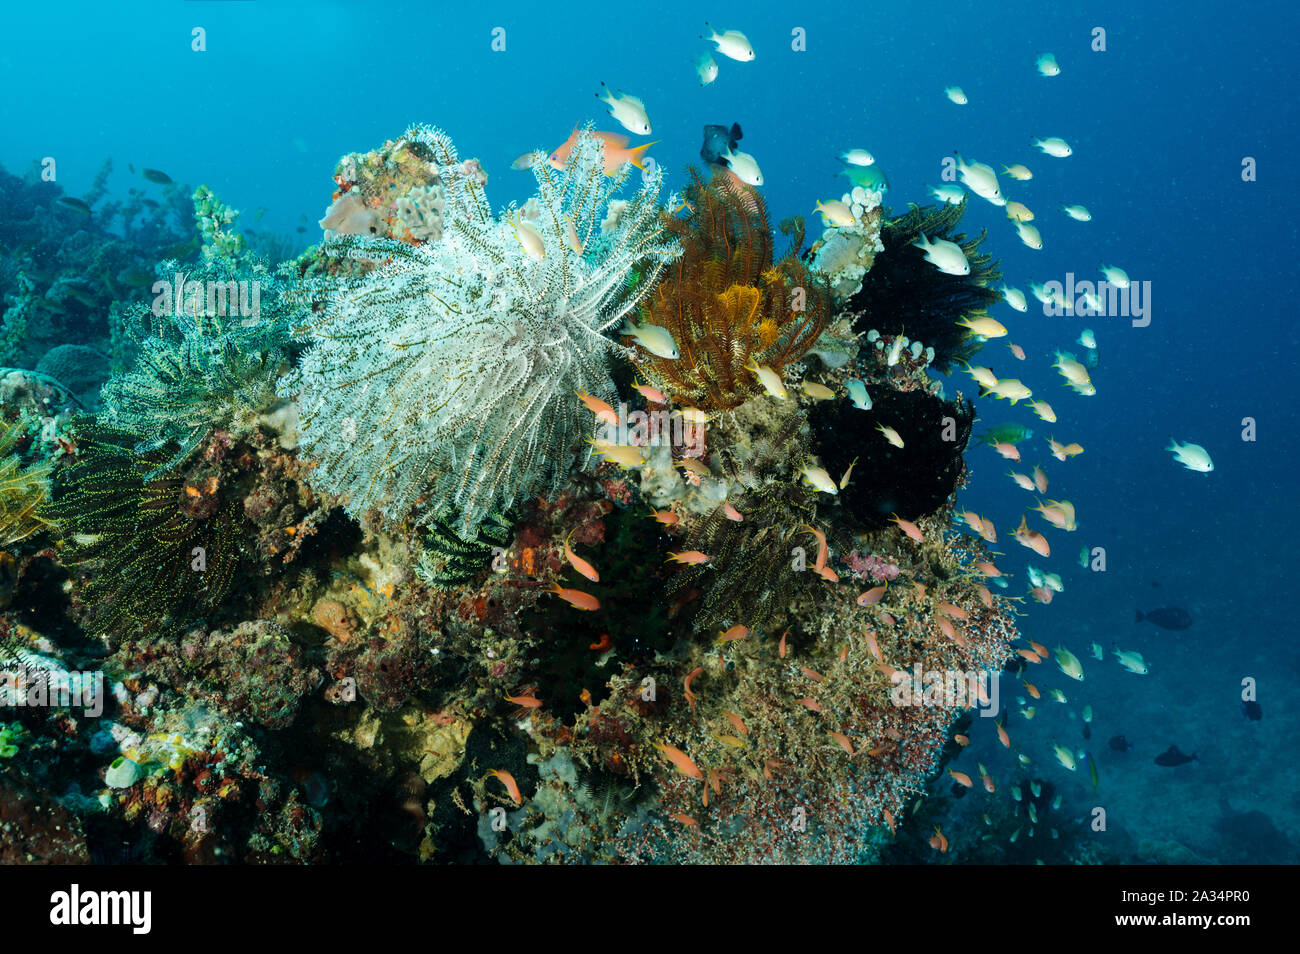 Reef scenic con anthiases, tubasterea coralli e crinoidi Sulawesi, Indonesia. Foto Stock